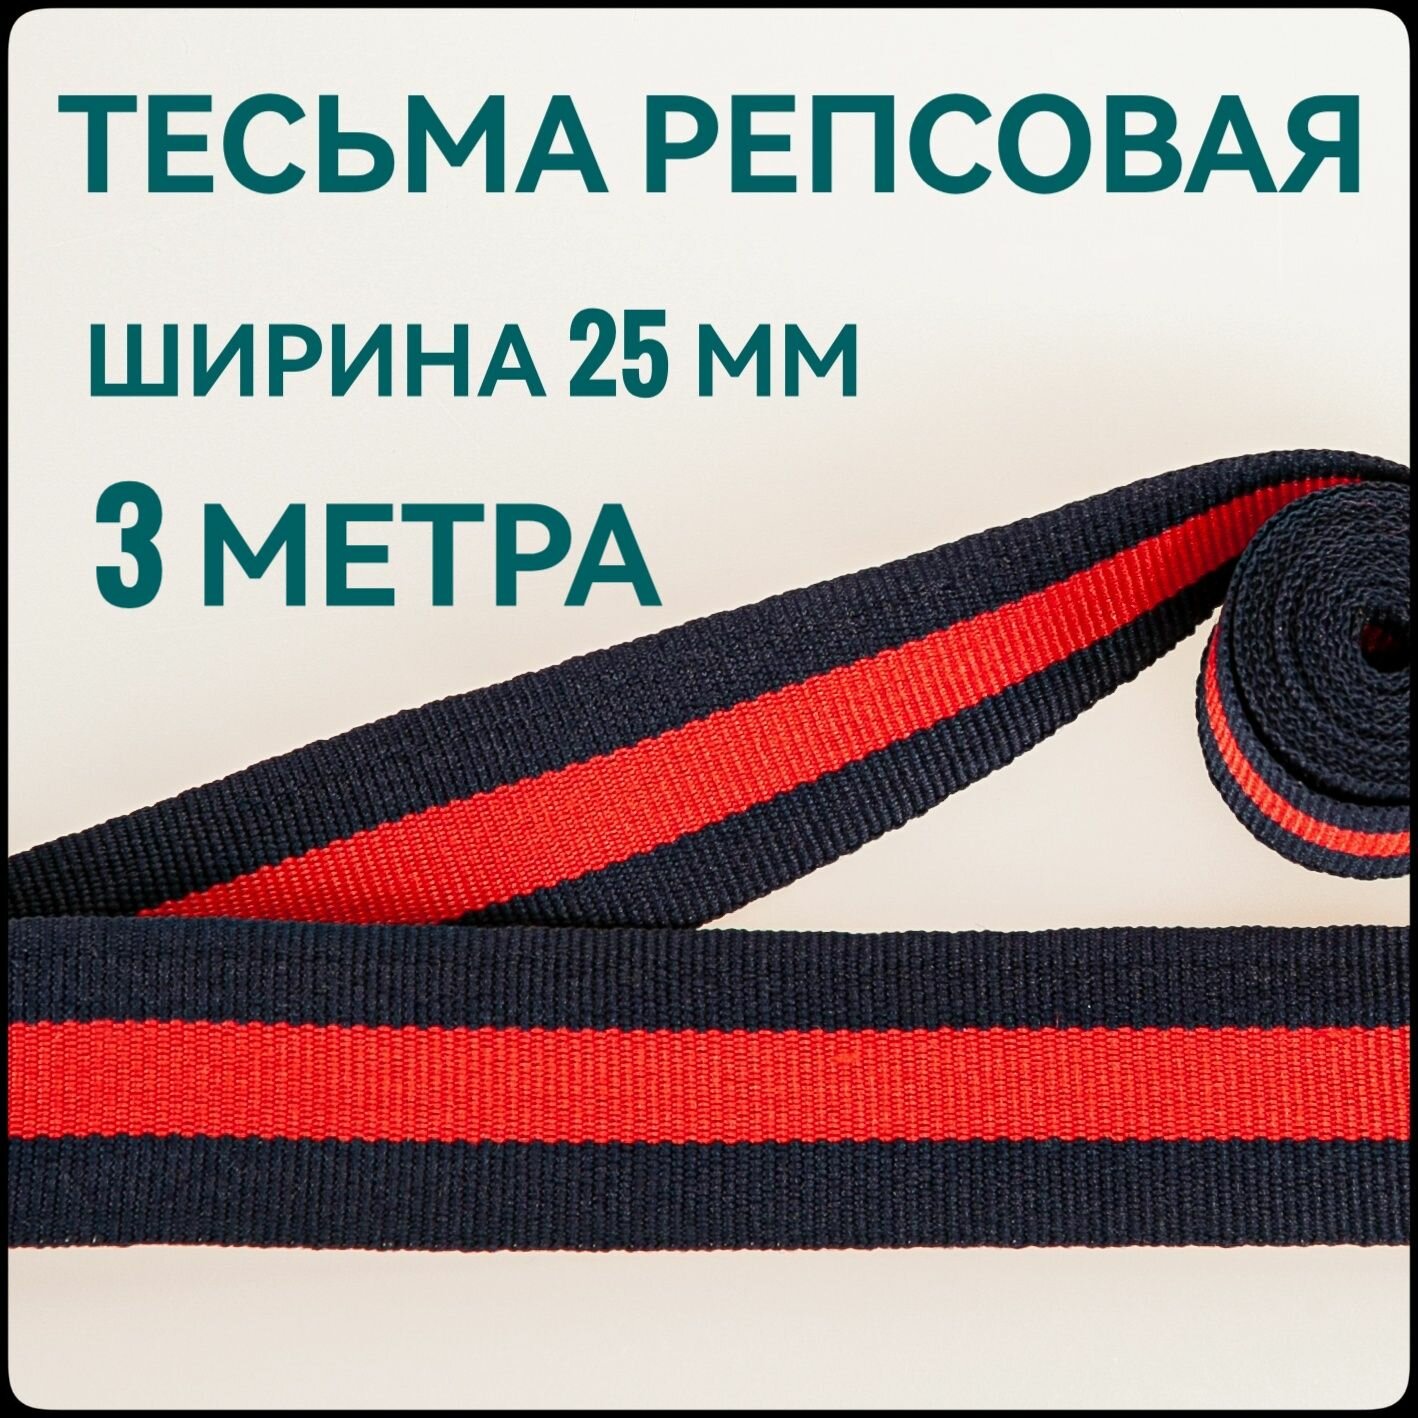 Тесьма /лента репсовая для шитья темно-синяя с красной полоской ш.25 мм в упаковке 3 м для шитья творчества рукоделия.